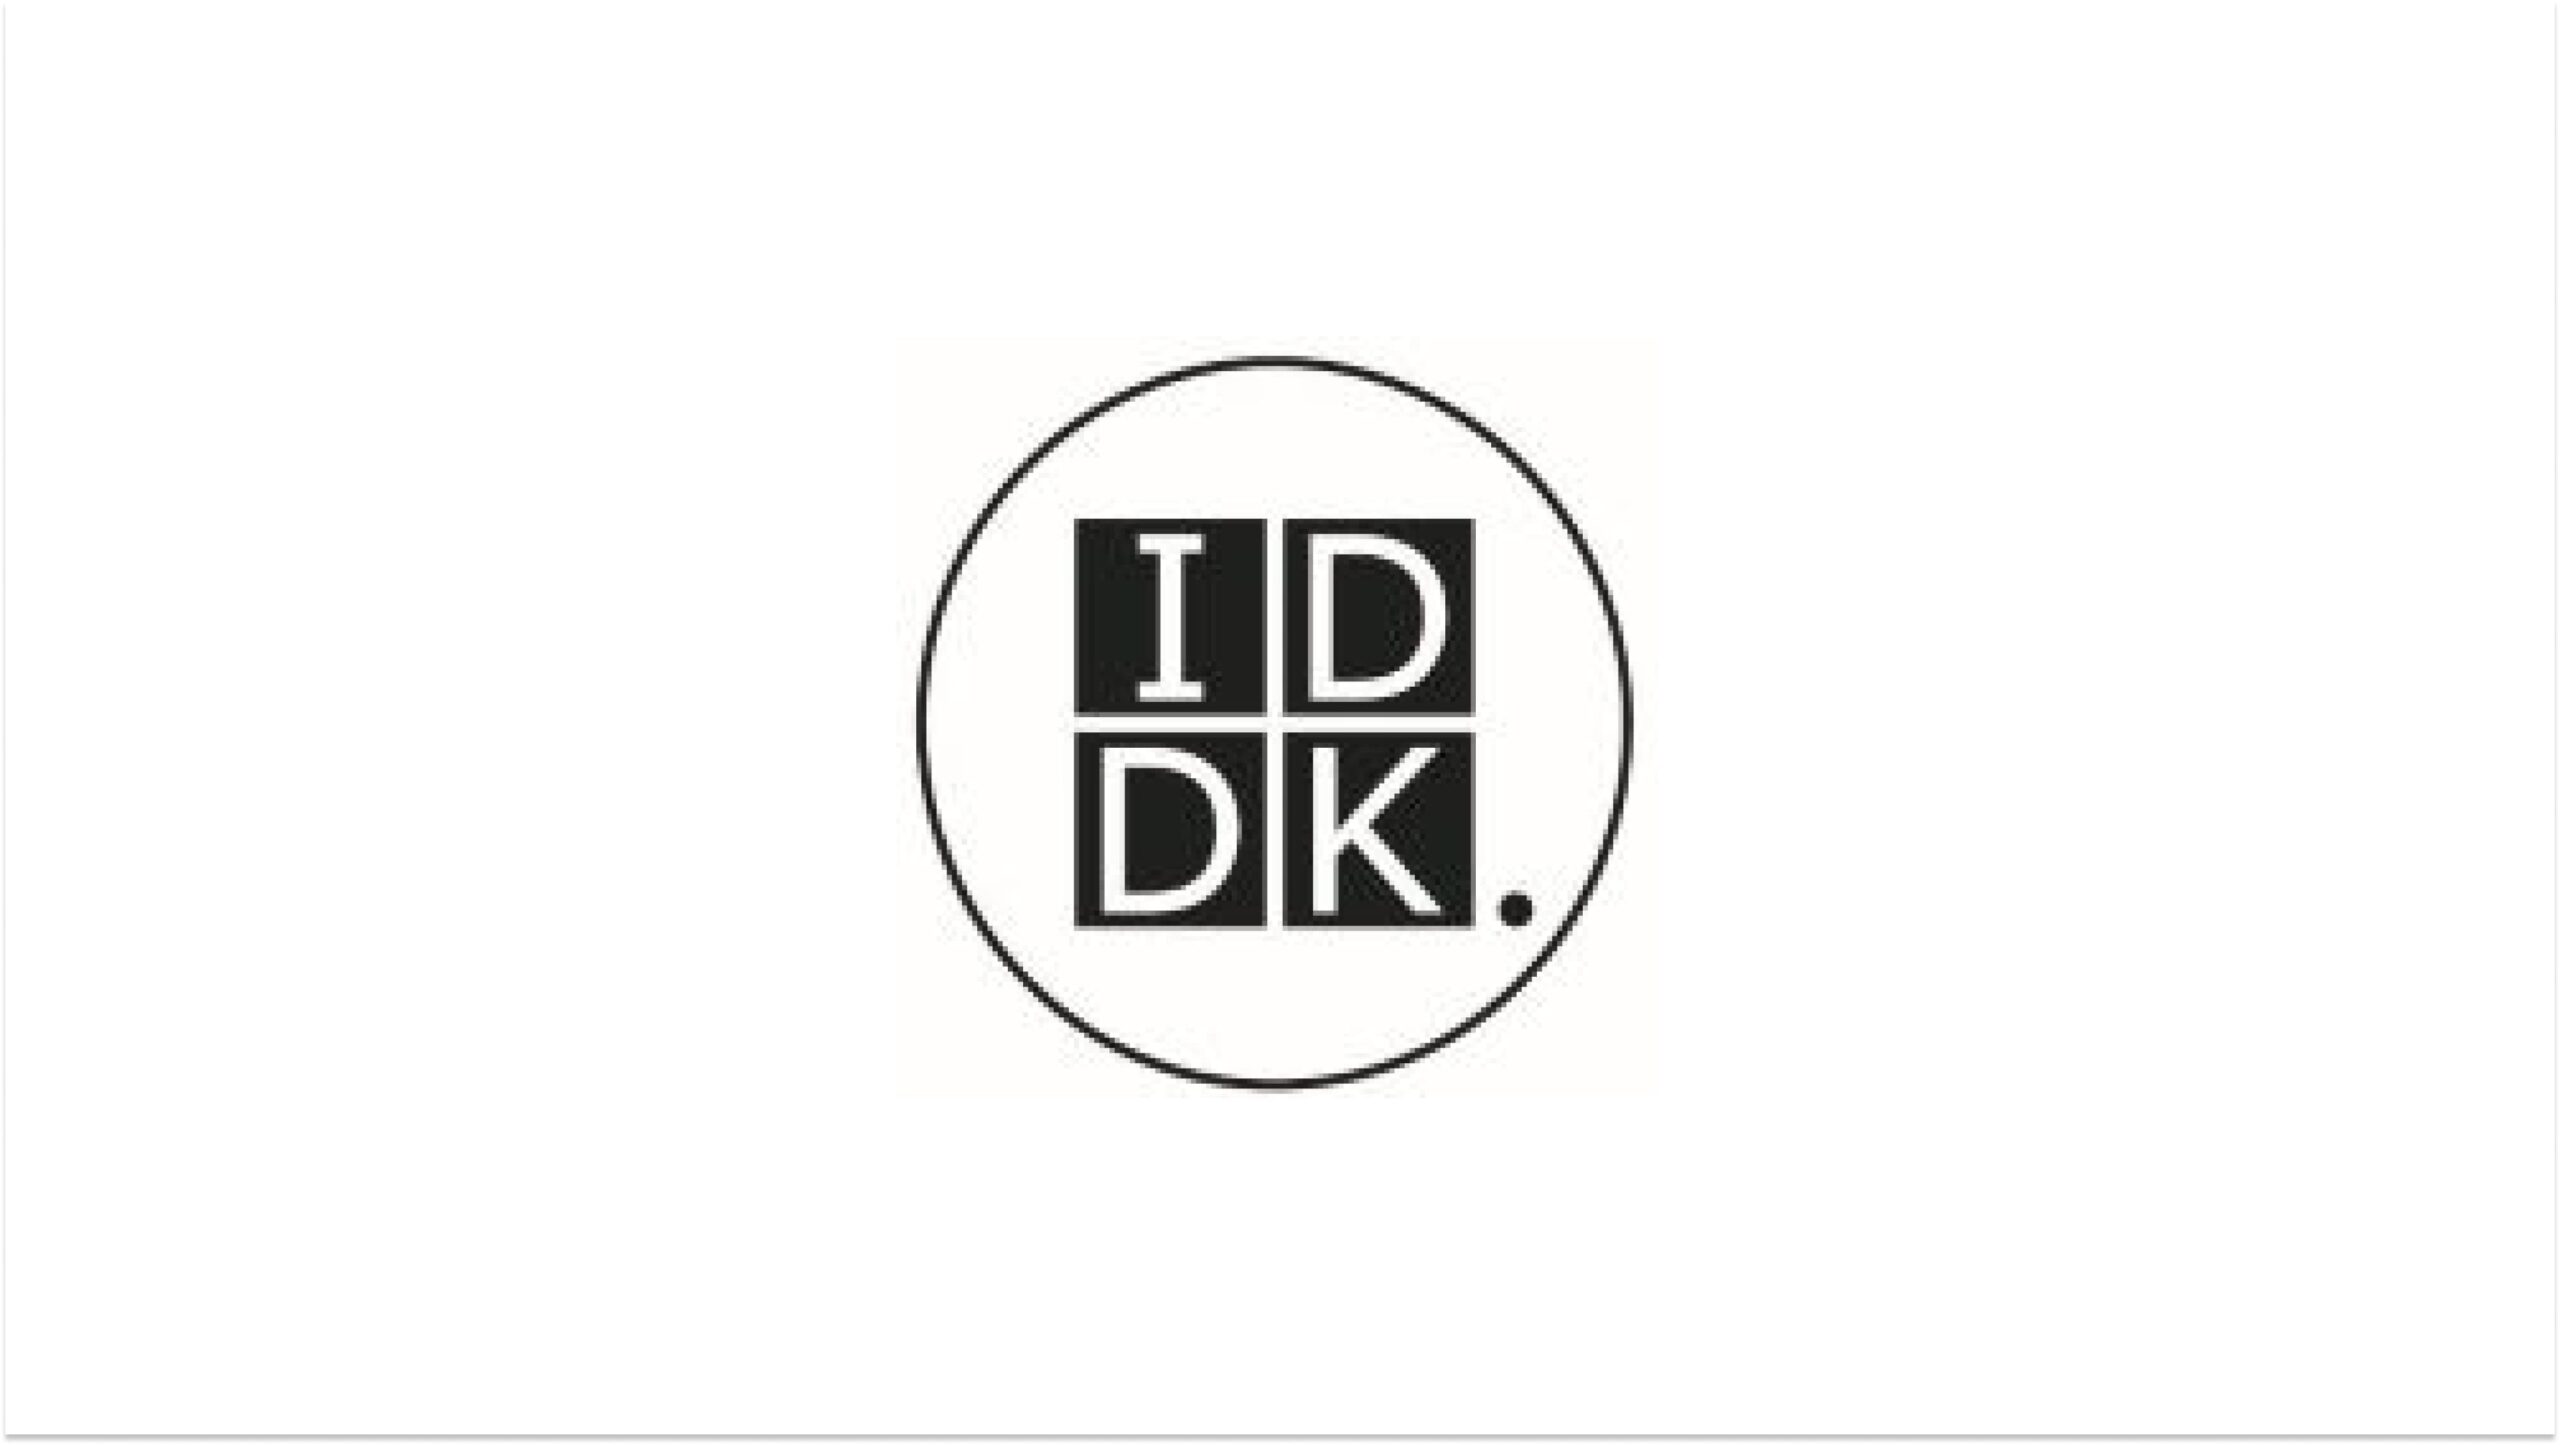 宇宙バイオ実験サービスを展開する株式会社IDDKが2.4億円の資金調達ー累計調達額は4.5億円に